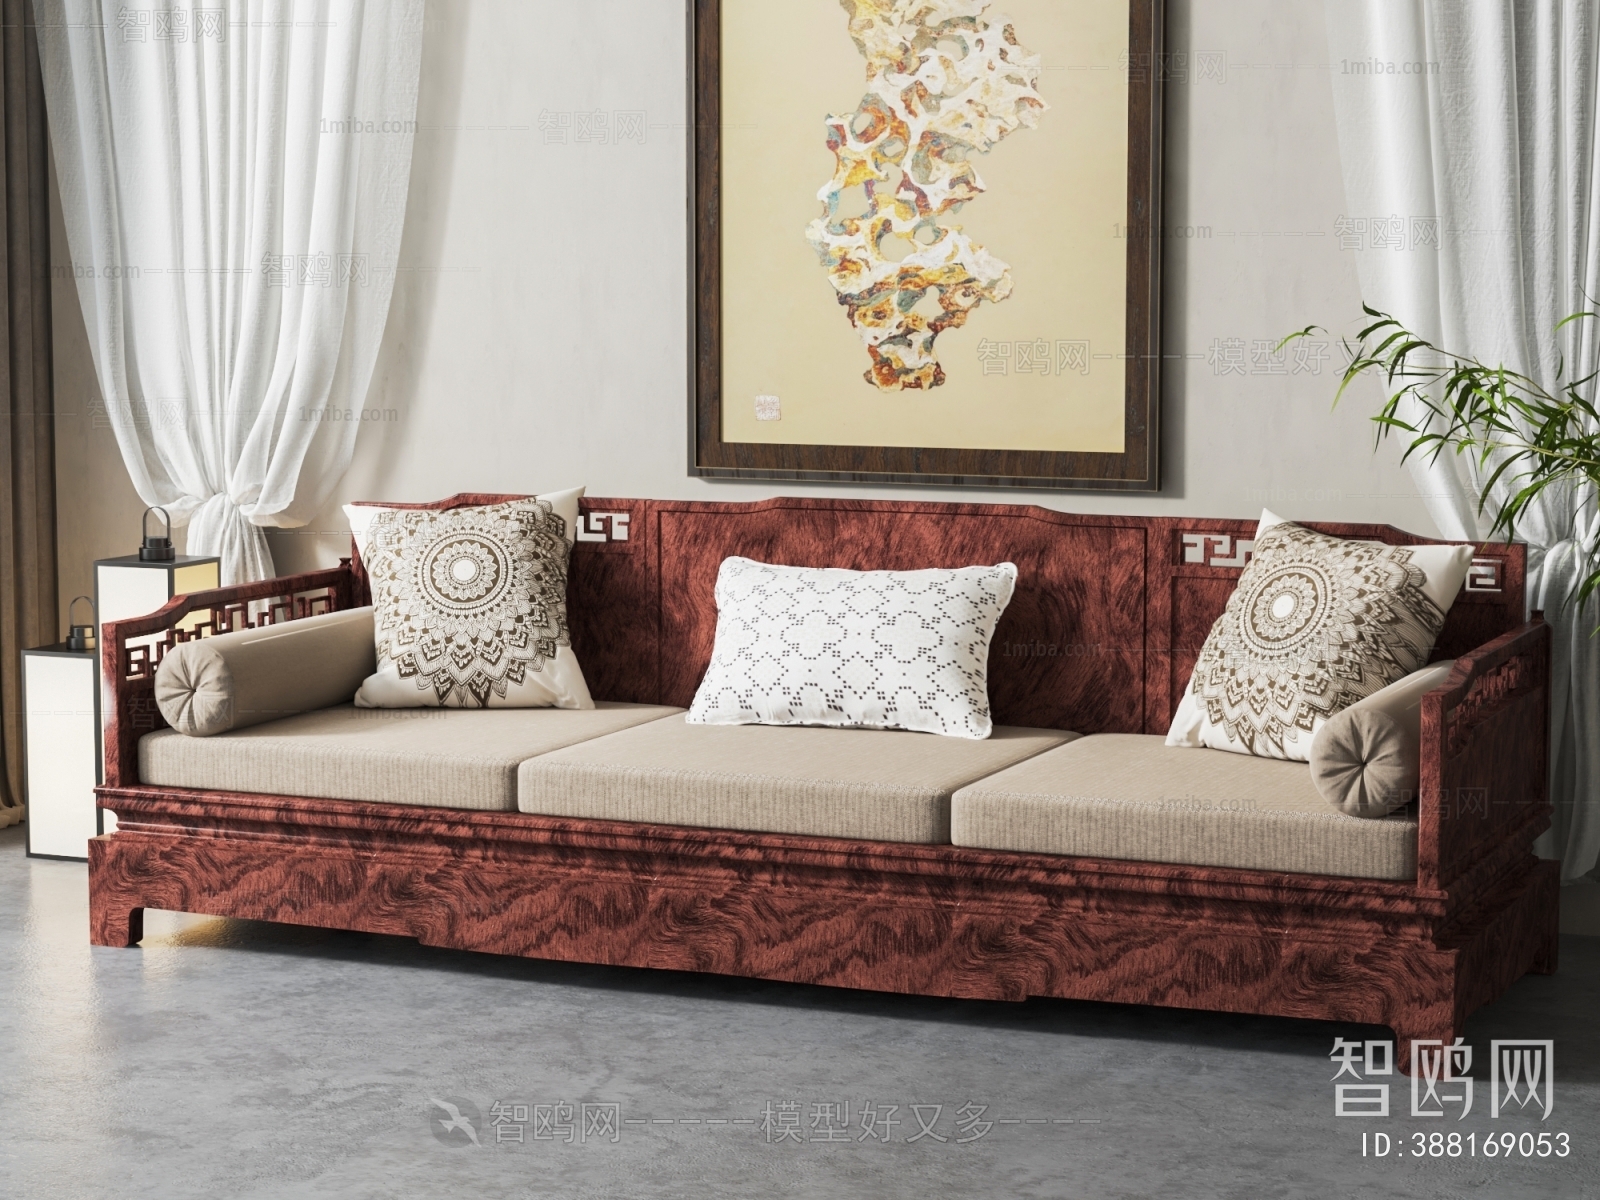 Chinese Style Three-seat Sofa